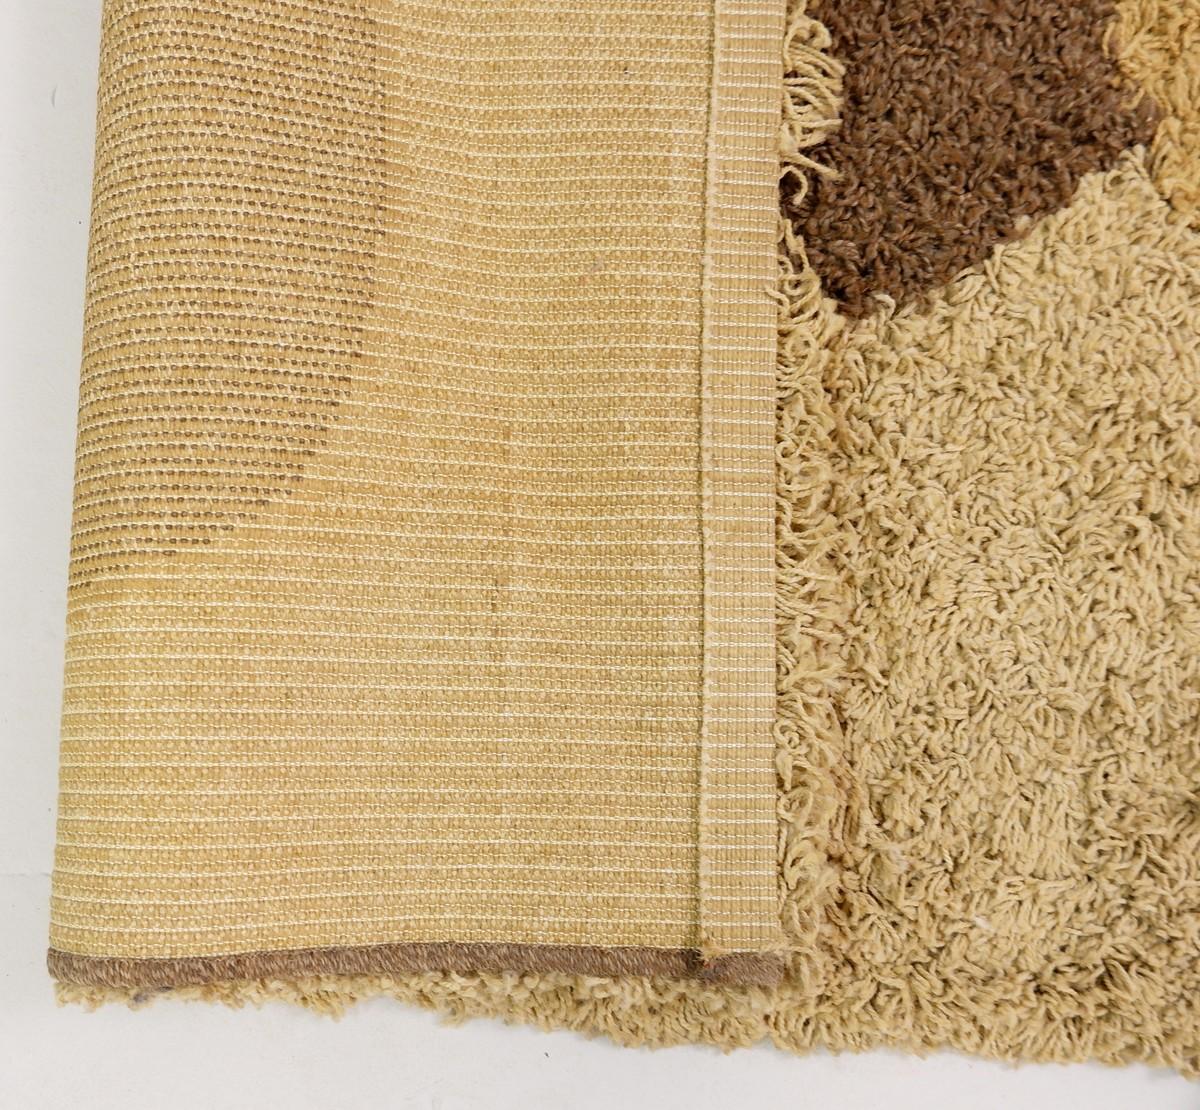 Mid-Century Modern brown and beige wool rug - 1970s
Measurs: D: 160 cm W: 240 cm.